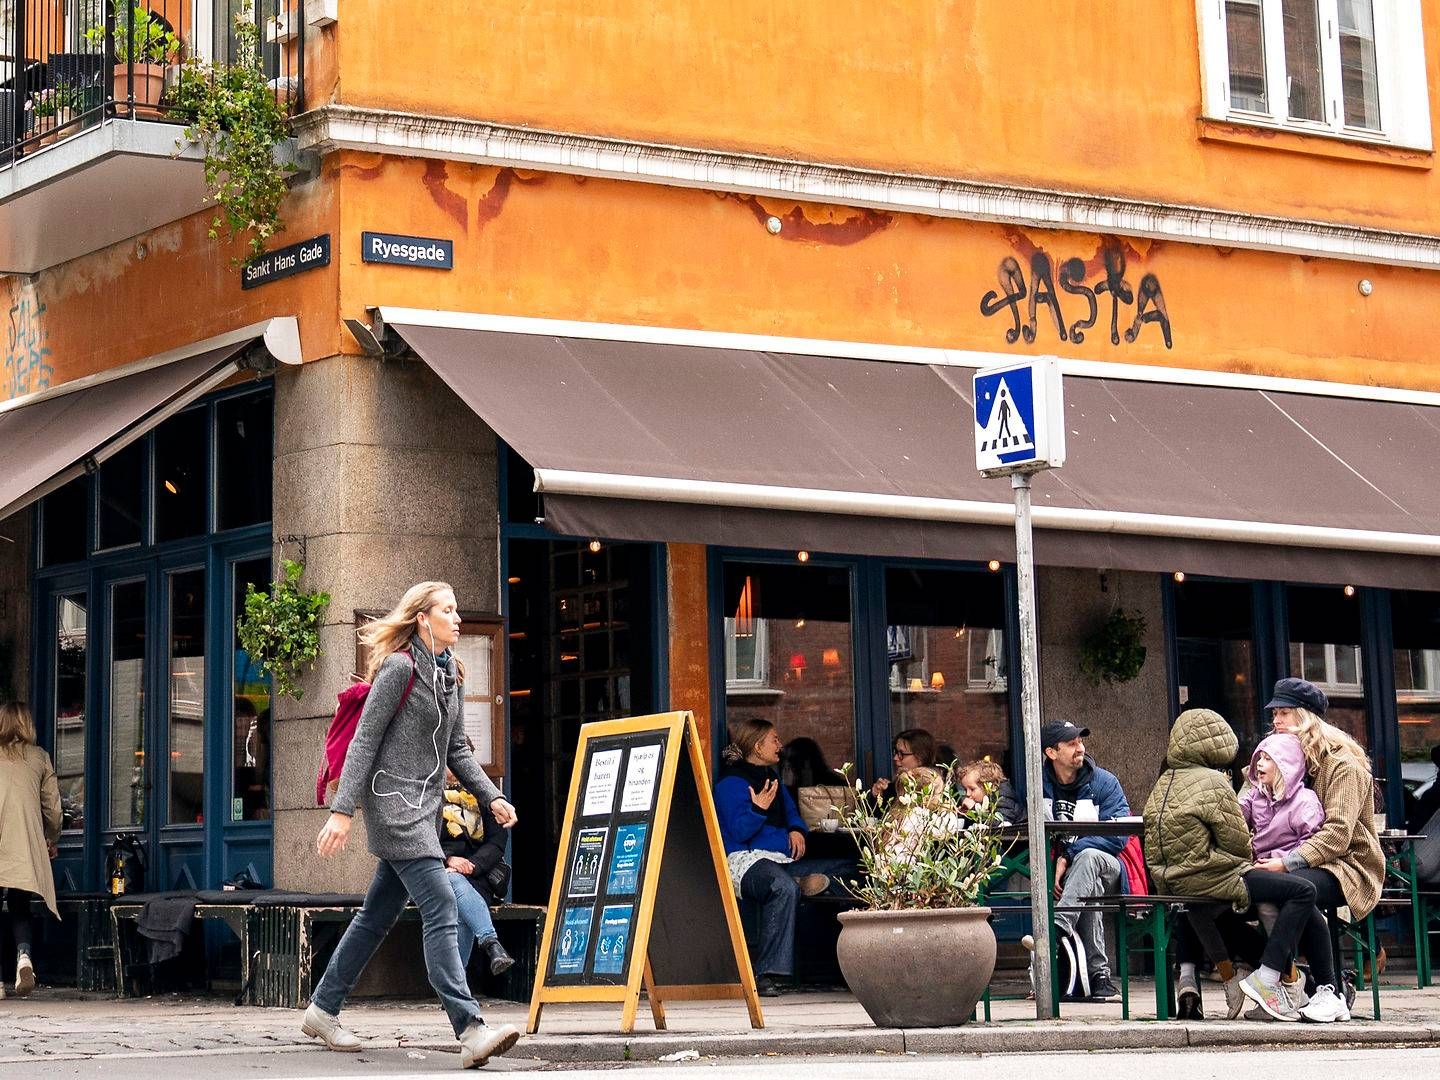 Horesta frygter for, hvordan det vil gå restauranter, caféer og hoteller, hvis hjælpepakkerne udfases for hurtigt. | Foto: Niels Christian Vilmann/Ritzau Scanpix